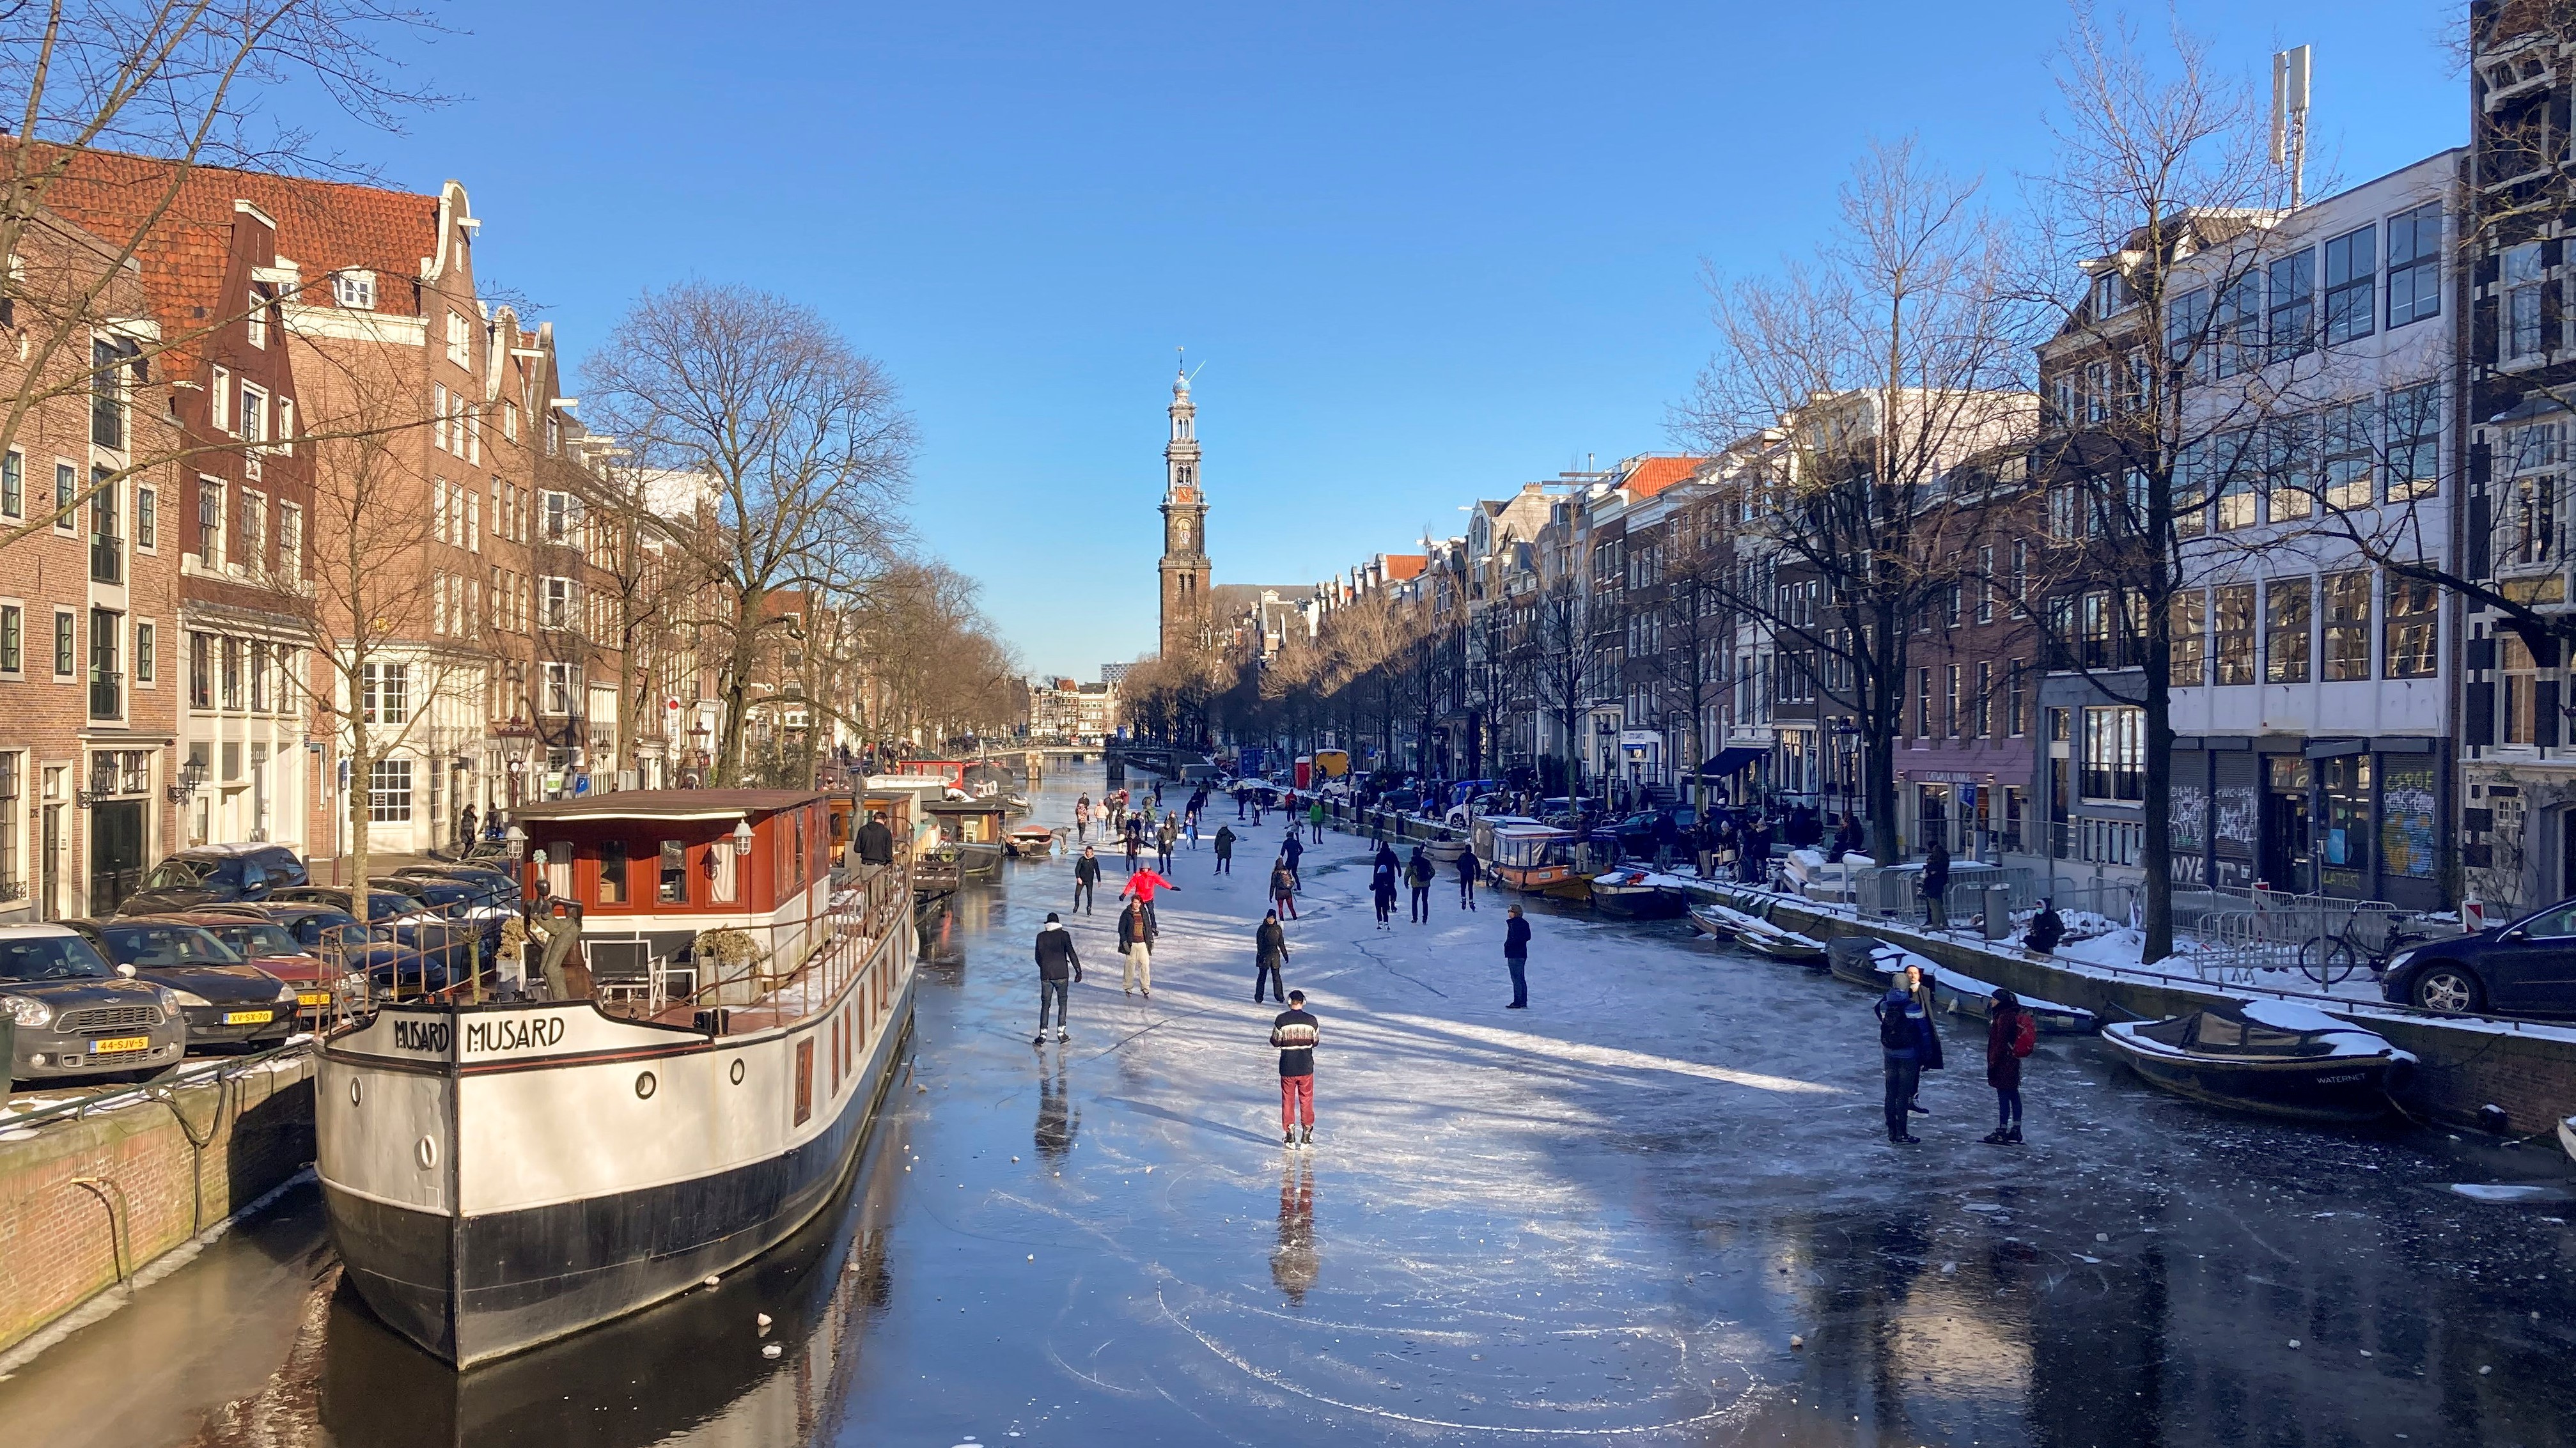 Korcsolyázók a befagyott Prinsengracht csatornán Amszterdamban 2021. február 13-án.